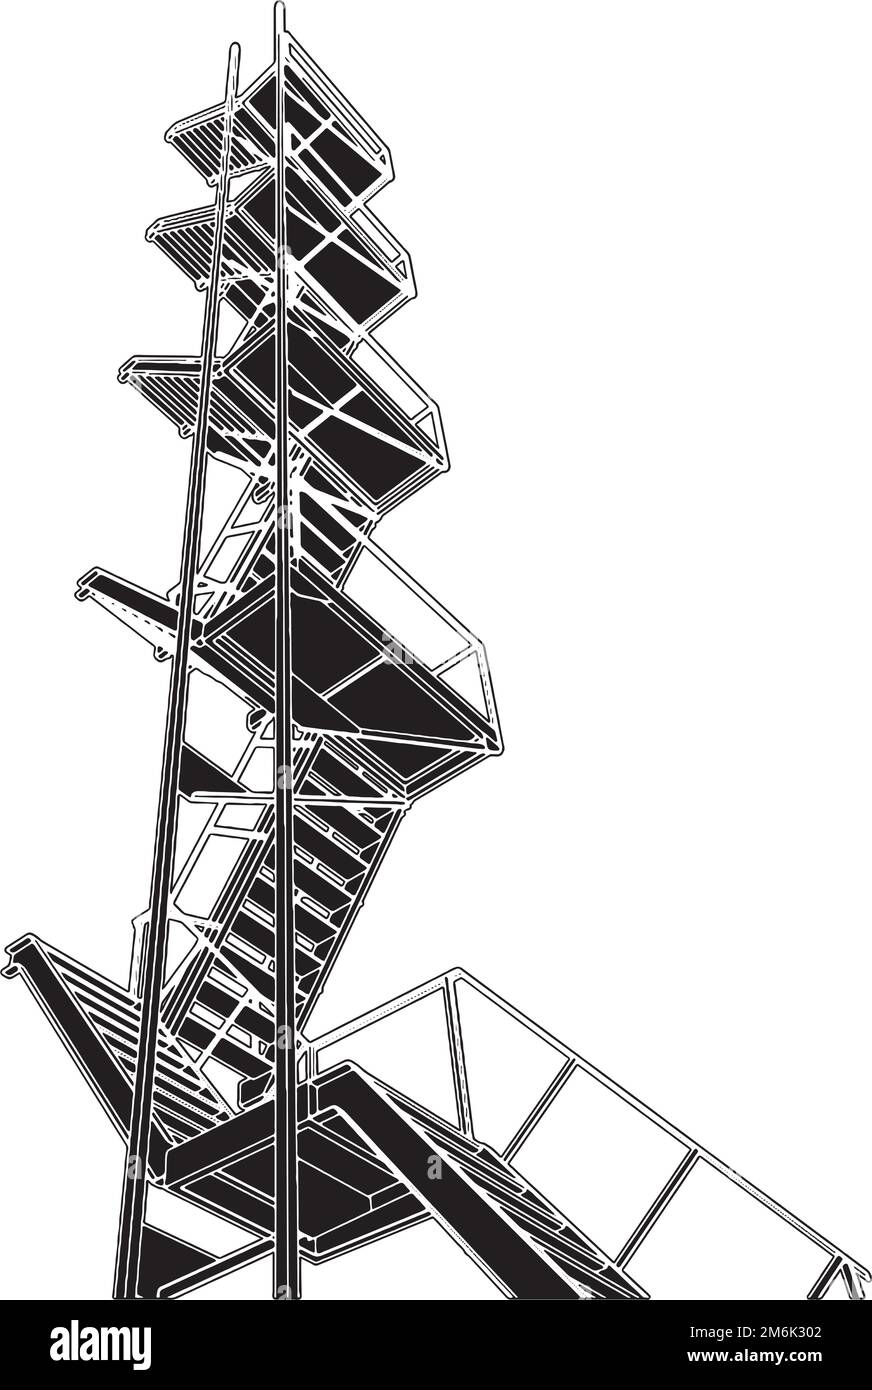 A Fire Escape Staircases Vector Stock Vector